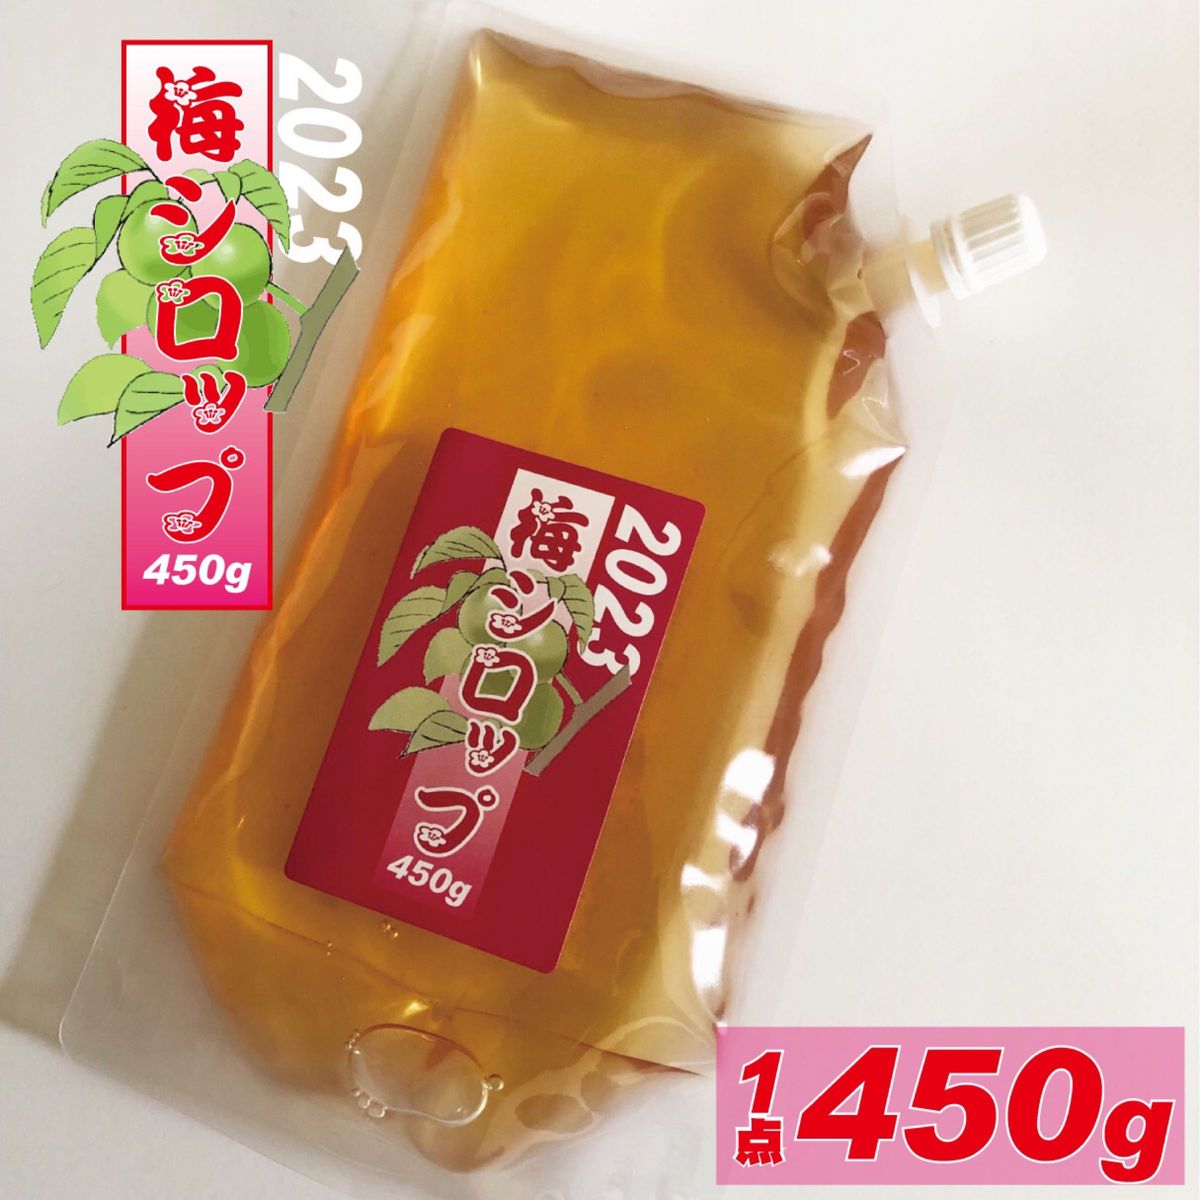 梅のいいとこと酸味たっぷり、用途多彩な梅シロップ450g。